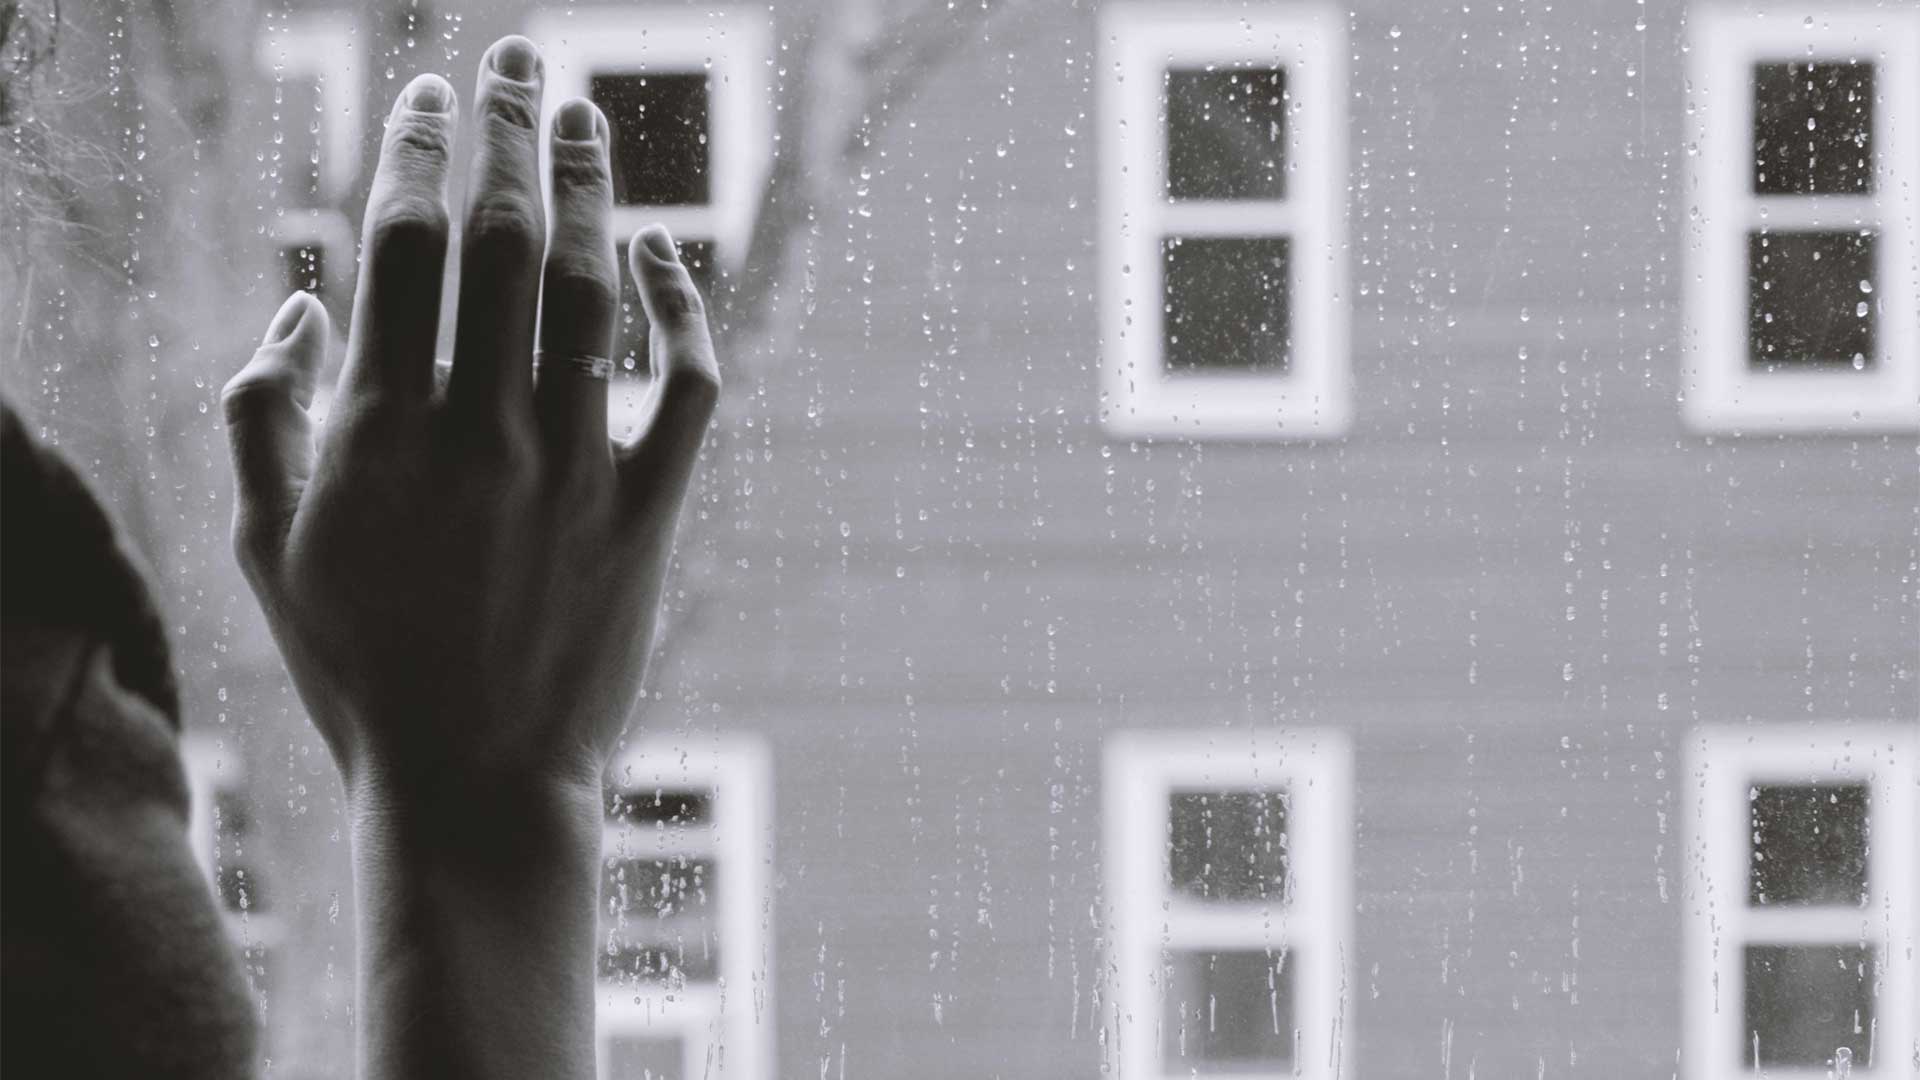 ασπρόμαυρη φωτογραφία που απεικονίζει ένα χέρι να ακουμπάει στο παράθυρο ενώ βρέχει